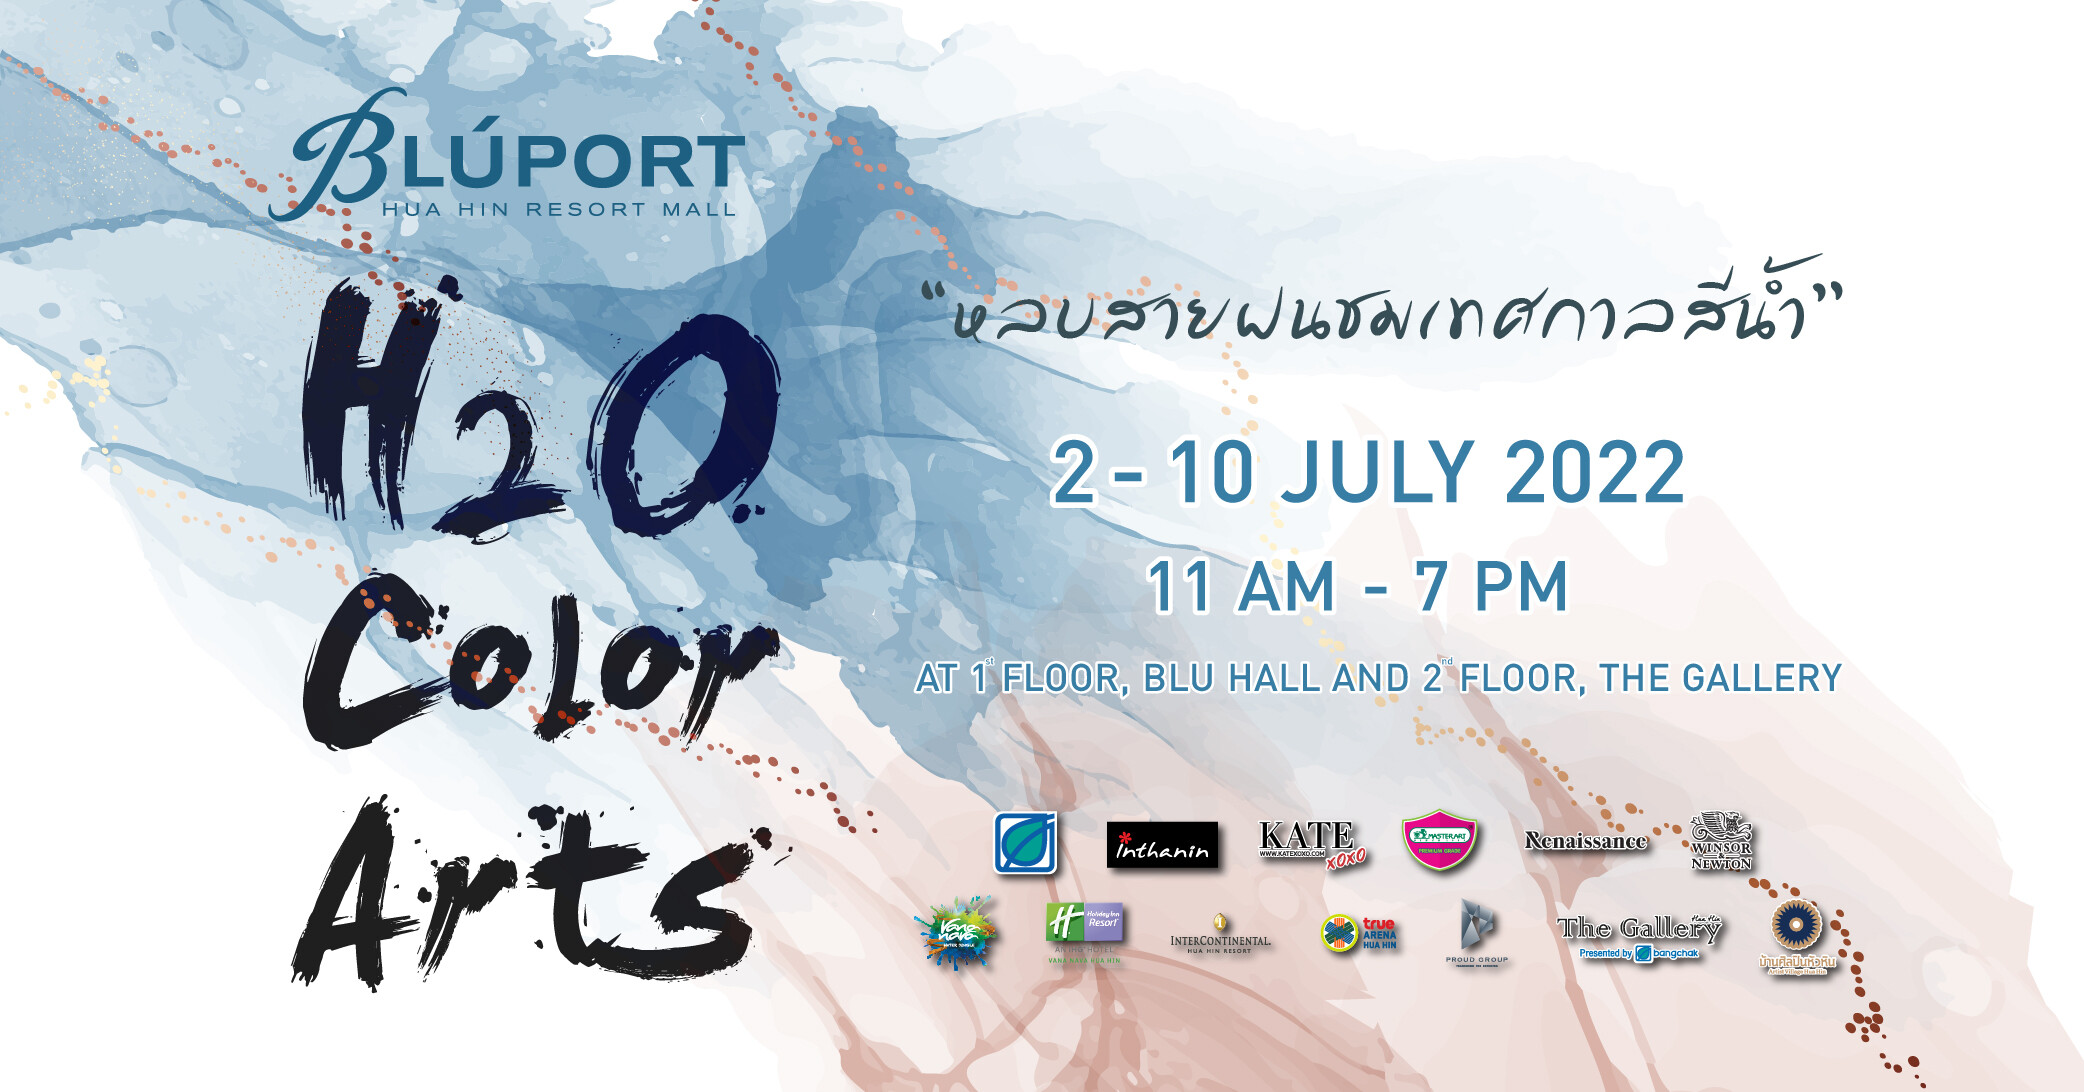 บลูพอร์ต หัวหิน เดอะแกลเลอรี หัวหิน ดึง 9 ศิลปินดัง ชมภาพวาดสีน้ำในงาน "H2O Color Arts หลบสายฝนชมเทศกาลสีน้ำ" 2 - 10 กรกฎาคมนี้ ที่บลูพอร์ต หัวหิน